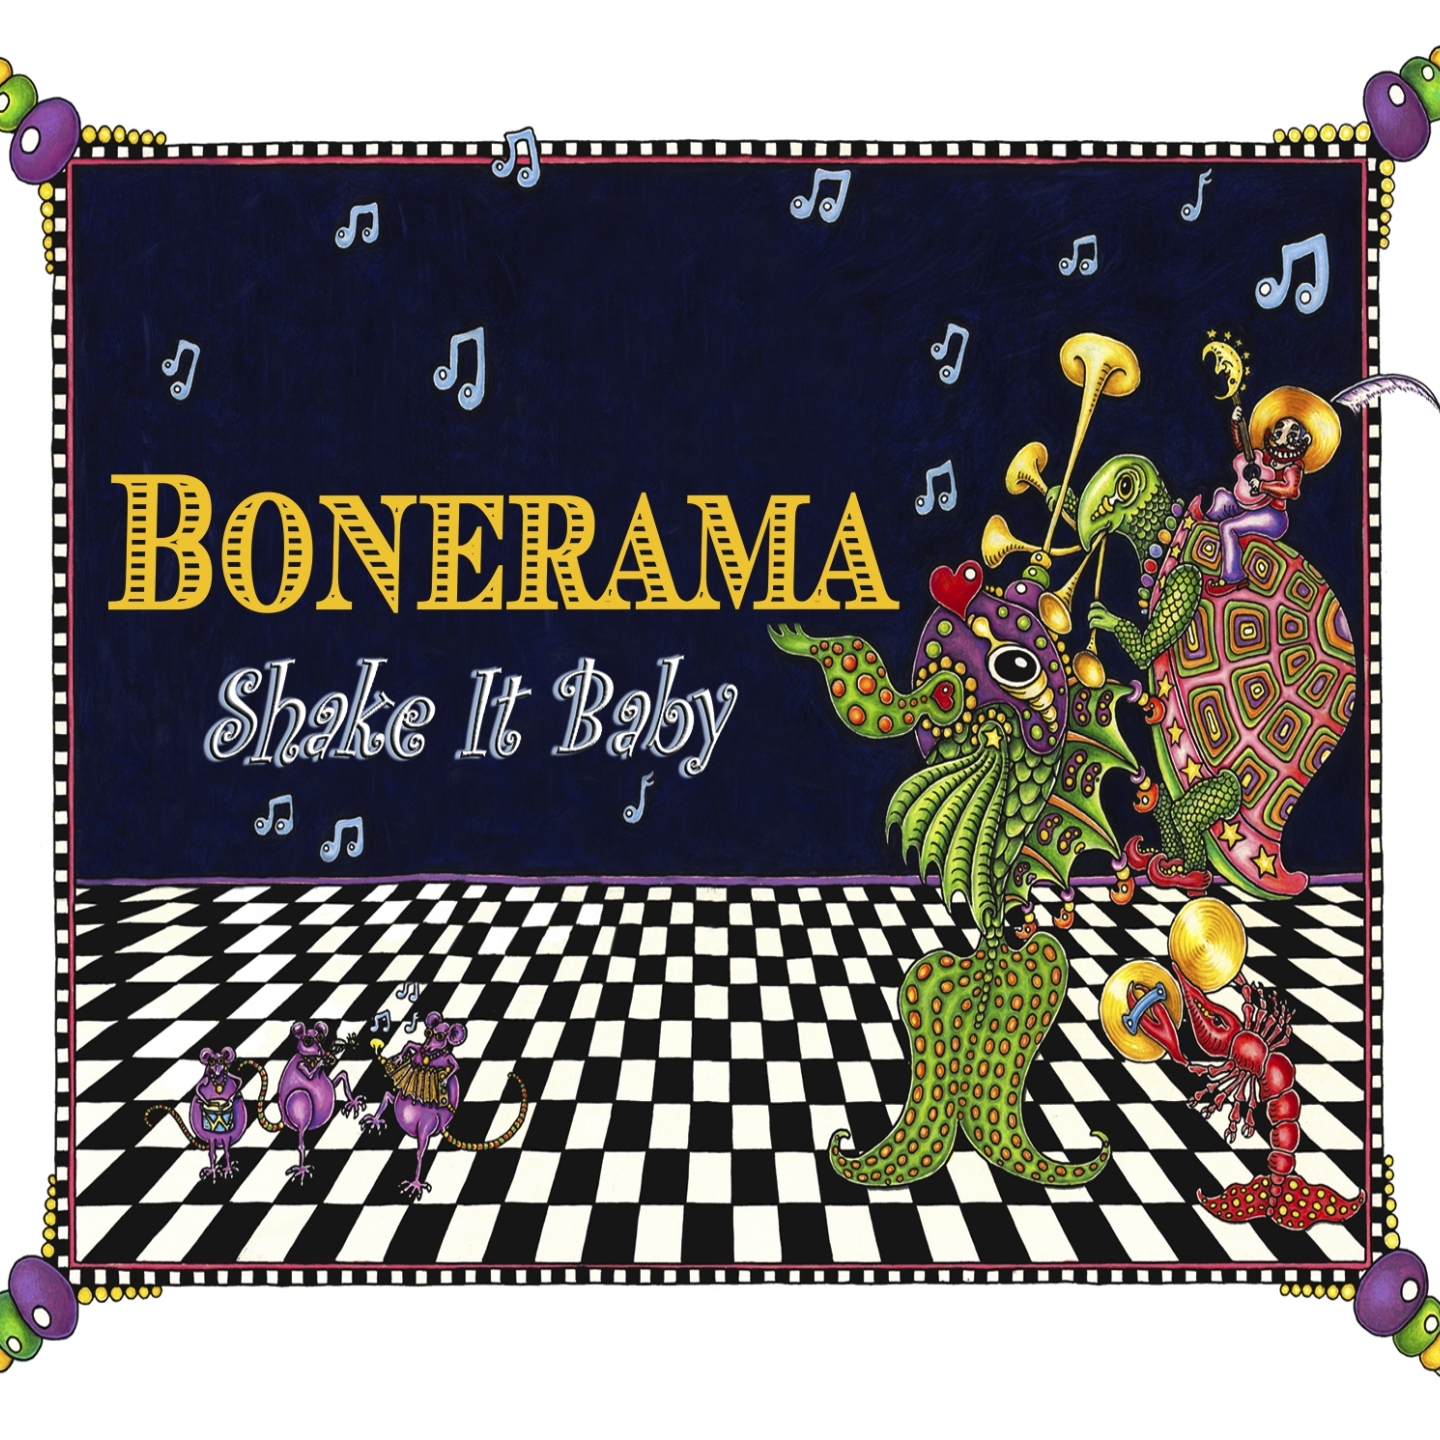 Bonerama – Home